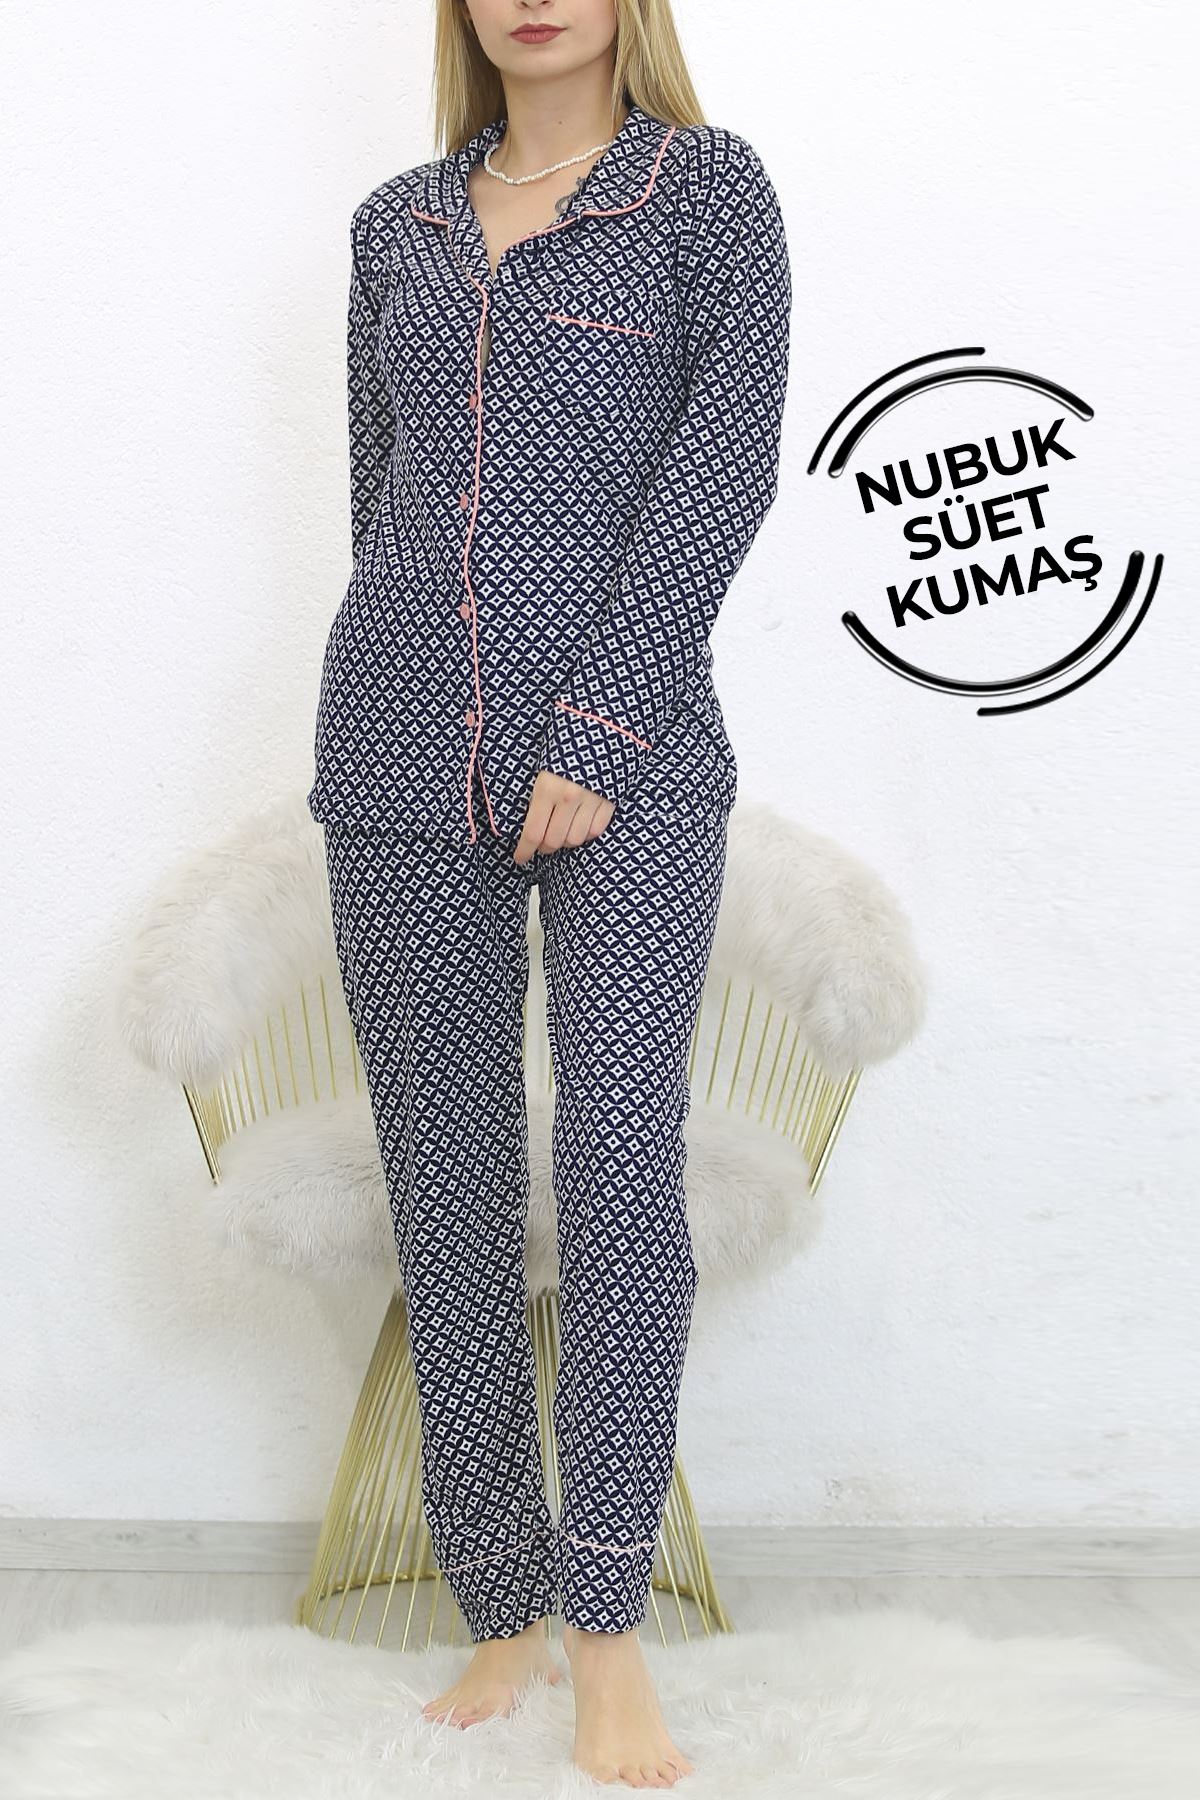 Nubuk Süet Pijama Takımı Lacipudra - 8529.1048.